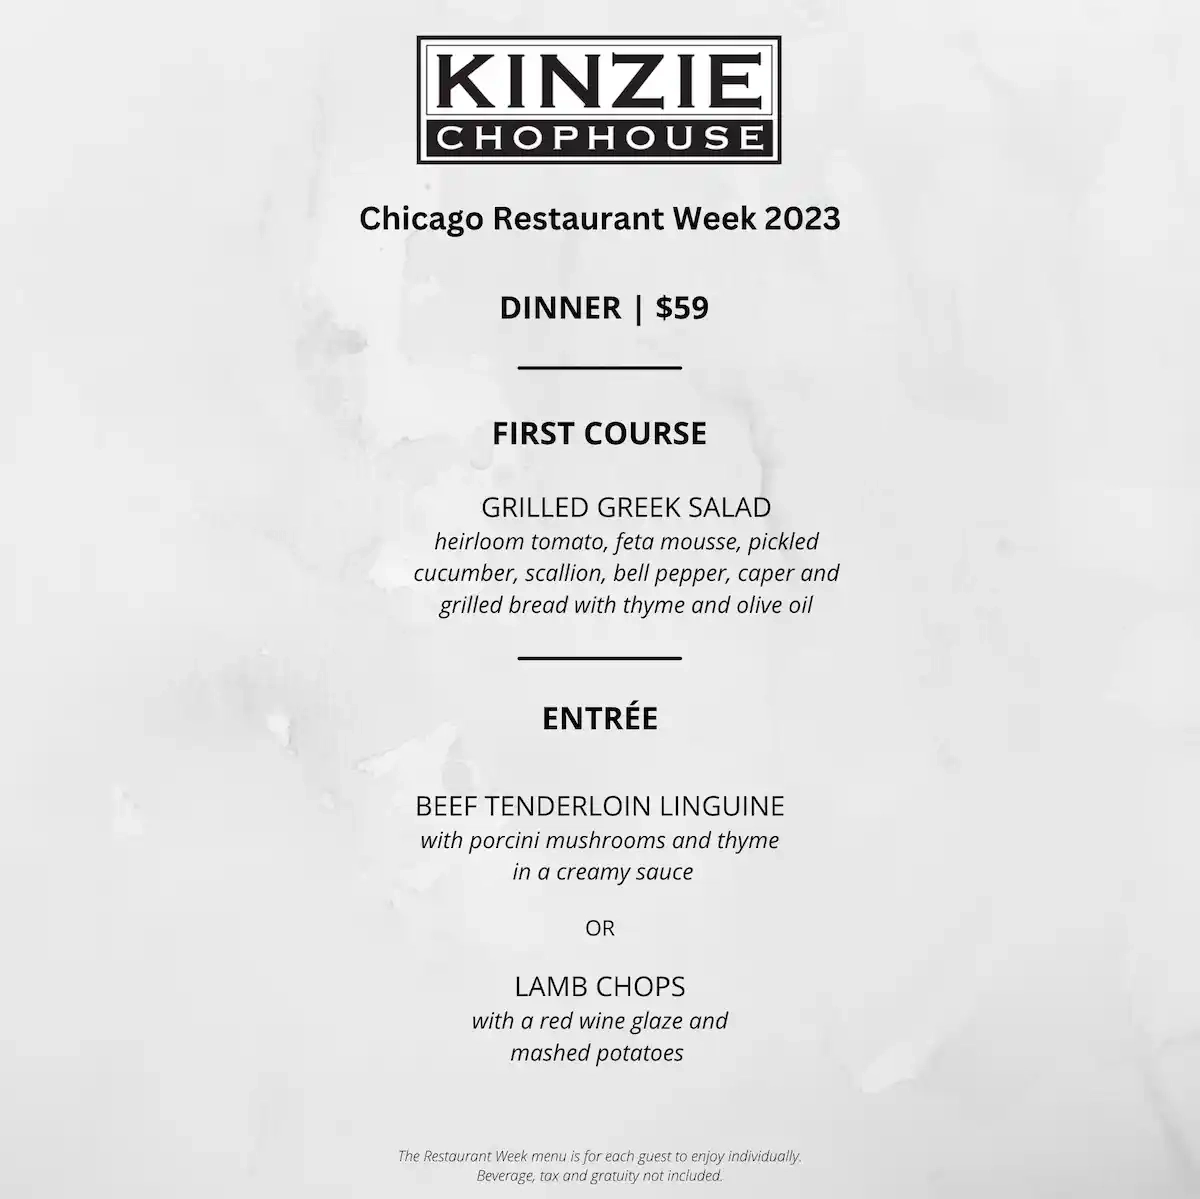 Chicago Restaurant Week 2023 Menu Kinzie Chophouse Dinner